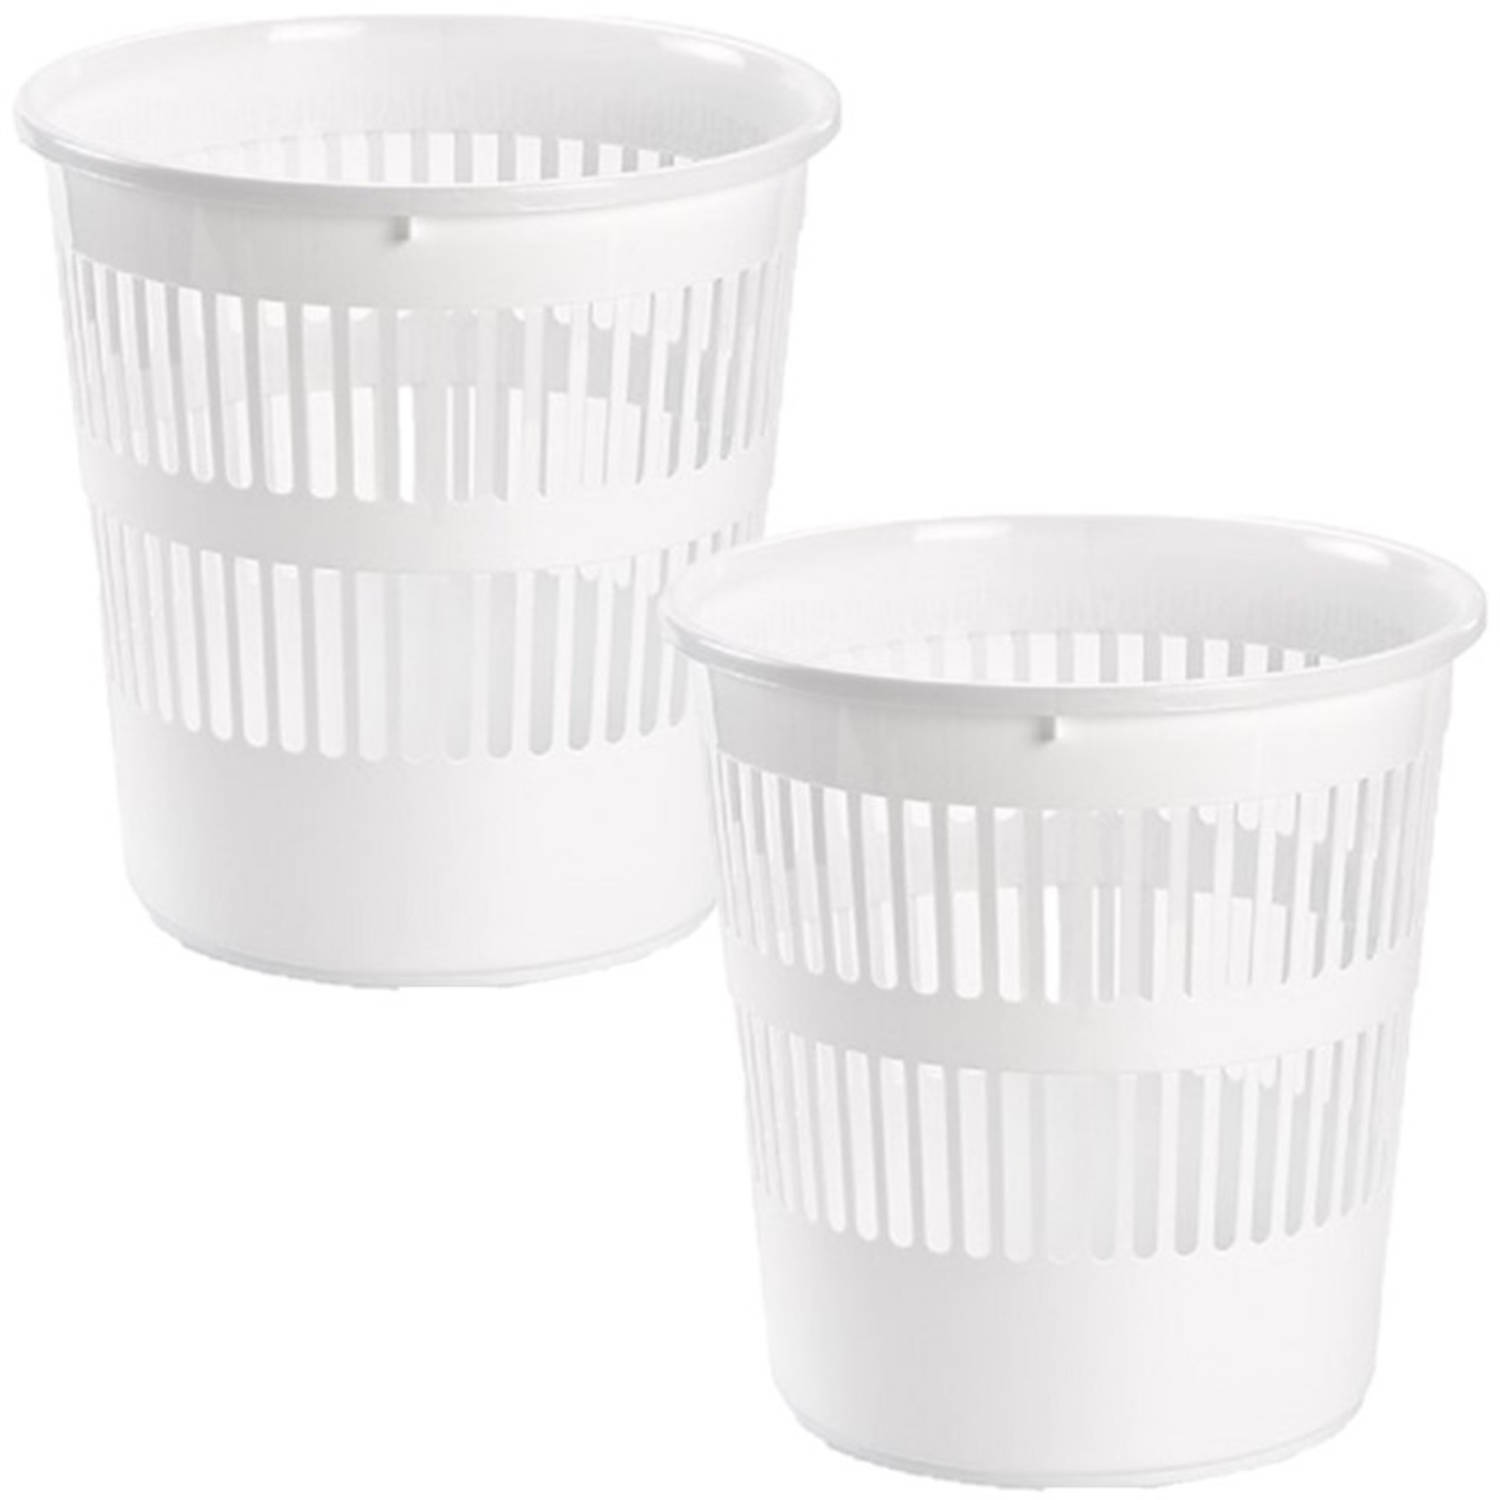 2x stuks afvalbakken/vuilnisbakken/kantoorprullenbakken plastic wit 28 cm - Prullenmanden